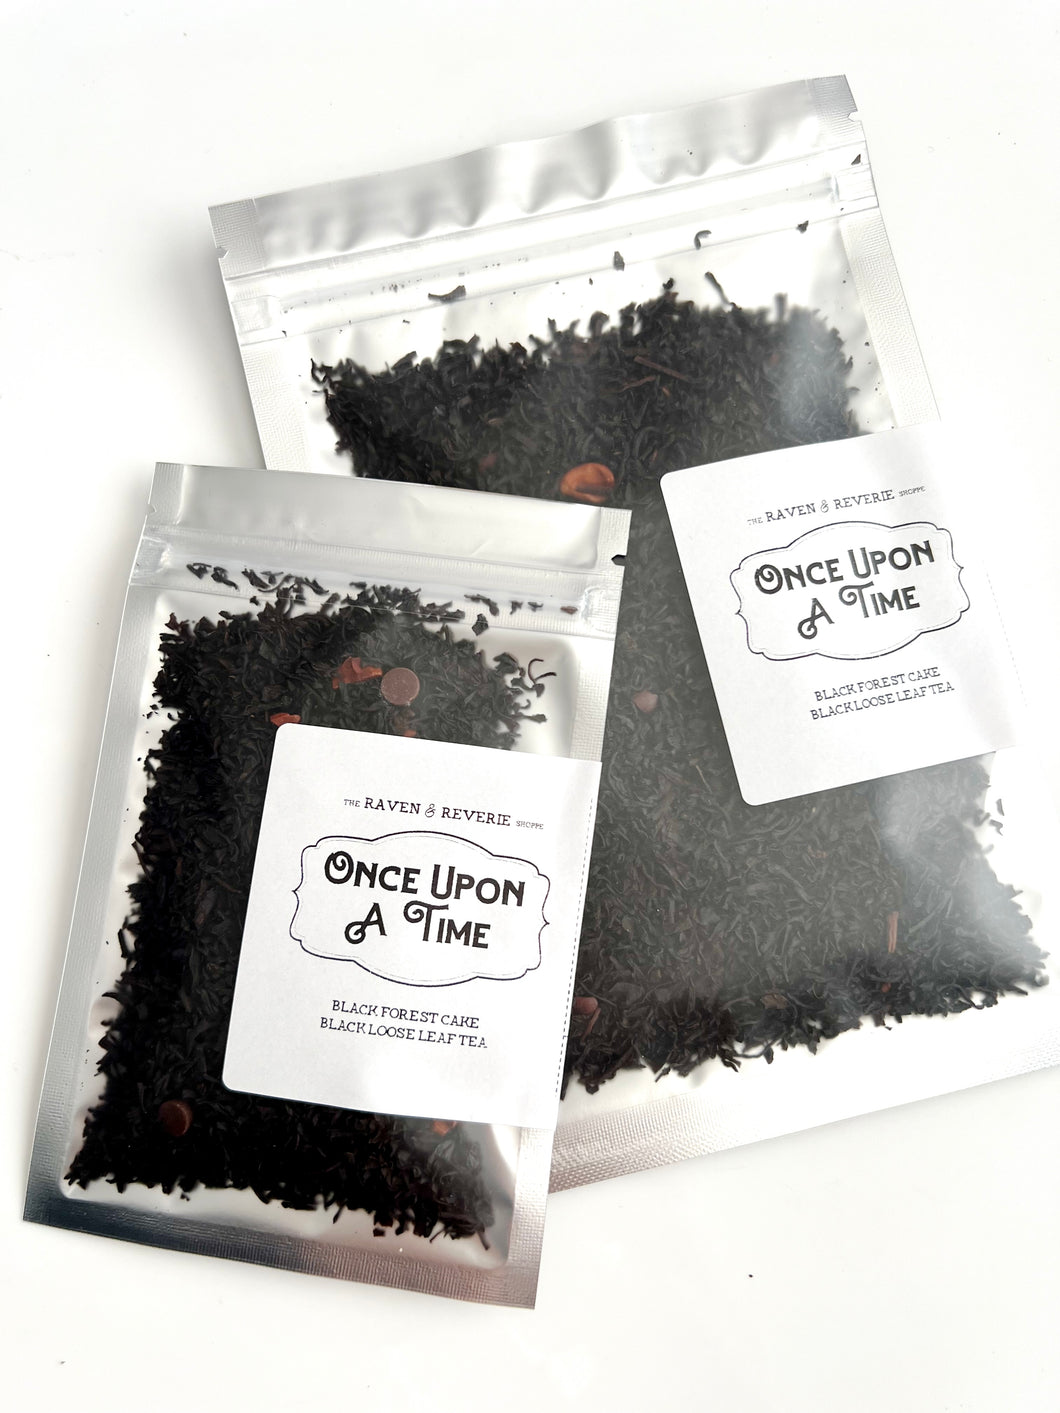 Once Upon A Time - Black Forest cake black loose leaf tea